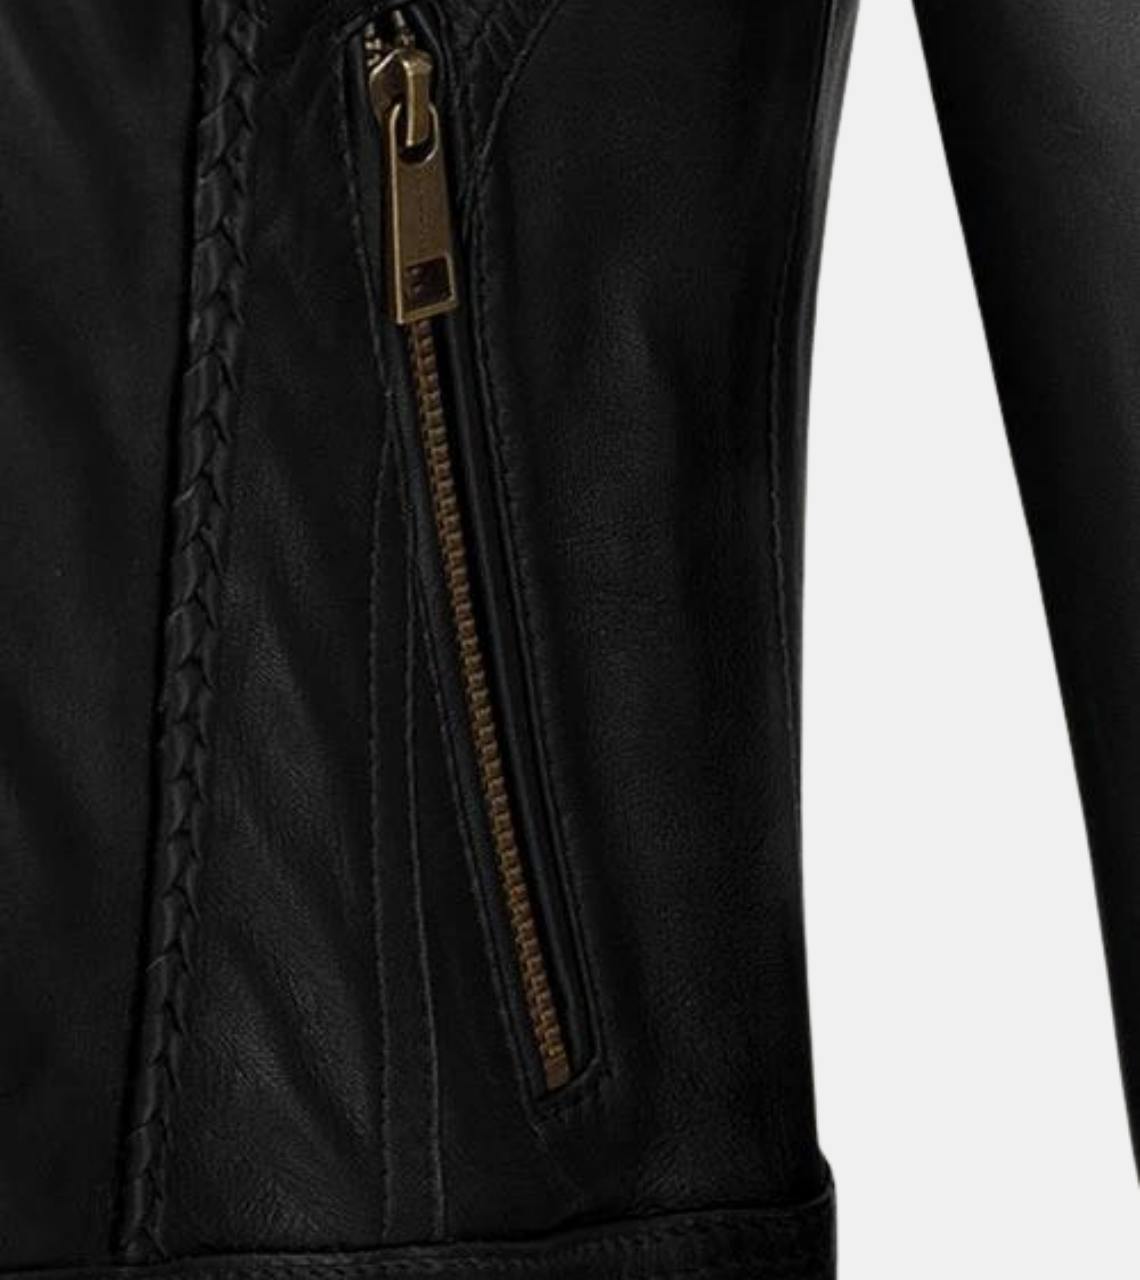 Stryker Women's Black Leather Jacket Pocket